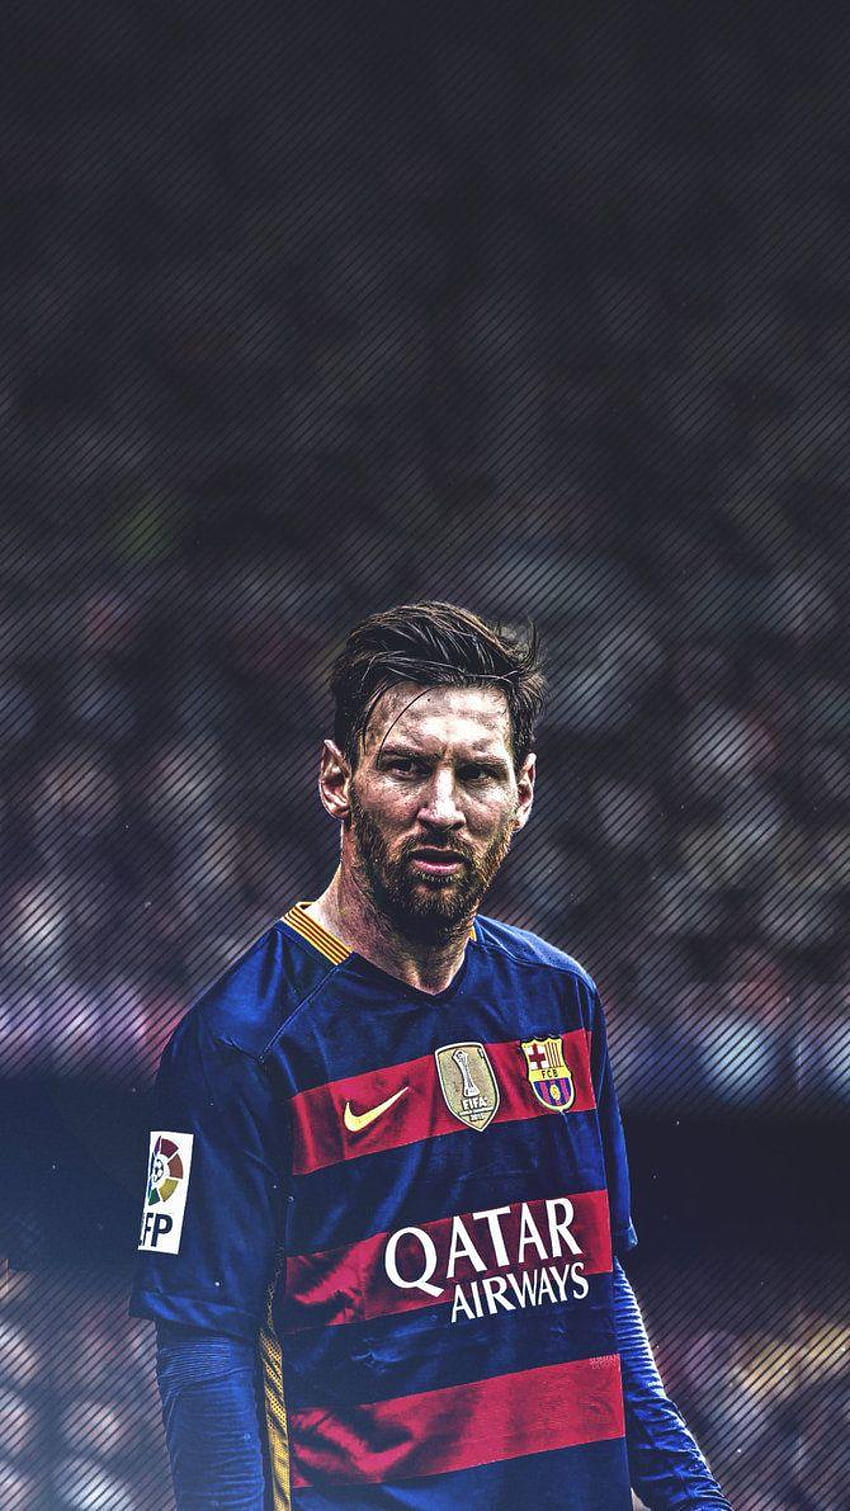 Hãy thể hiện niềm đam mê của bạn với Messi bằng cách đặt hình nền điện thoại của anh ta trên điện thoại thông minh của mình. Với chất lượng hình ảnh đẹp và rõ nét, chắc chắn bạn sẽ cảm thấy hài lòng với lựa chọn của mình.